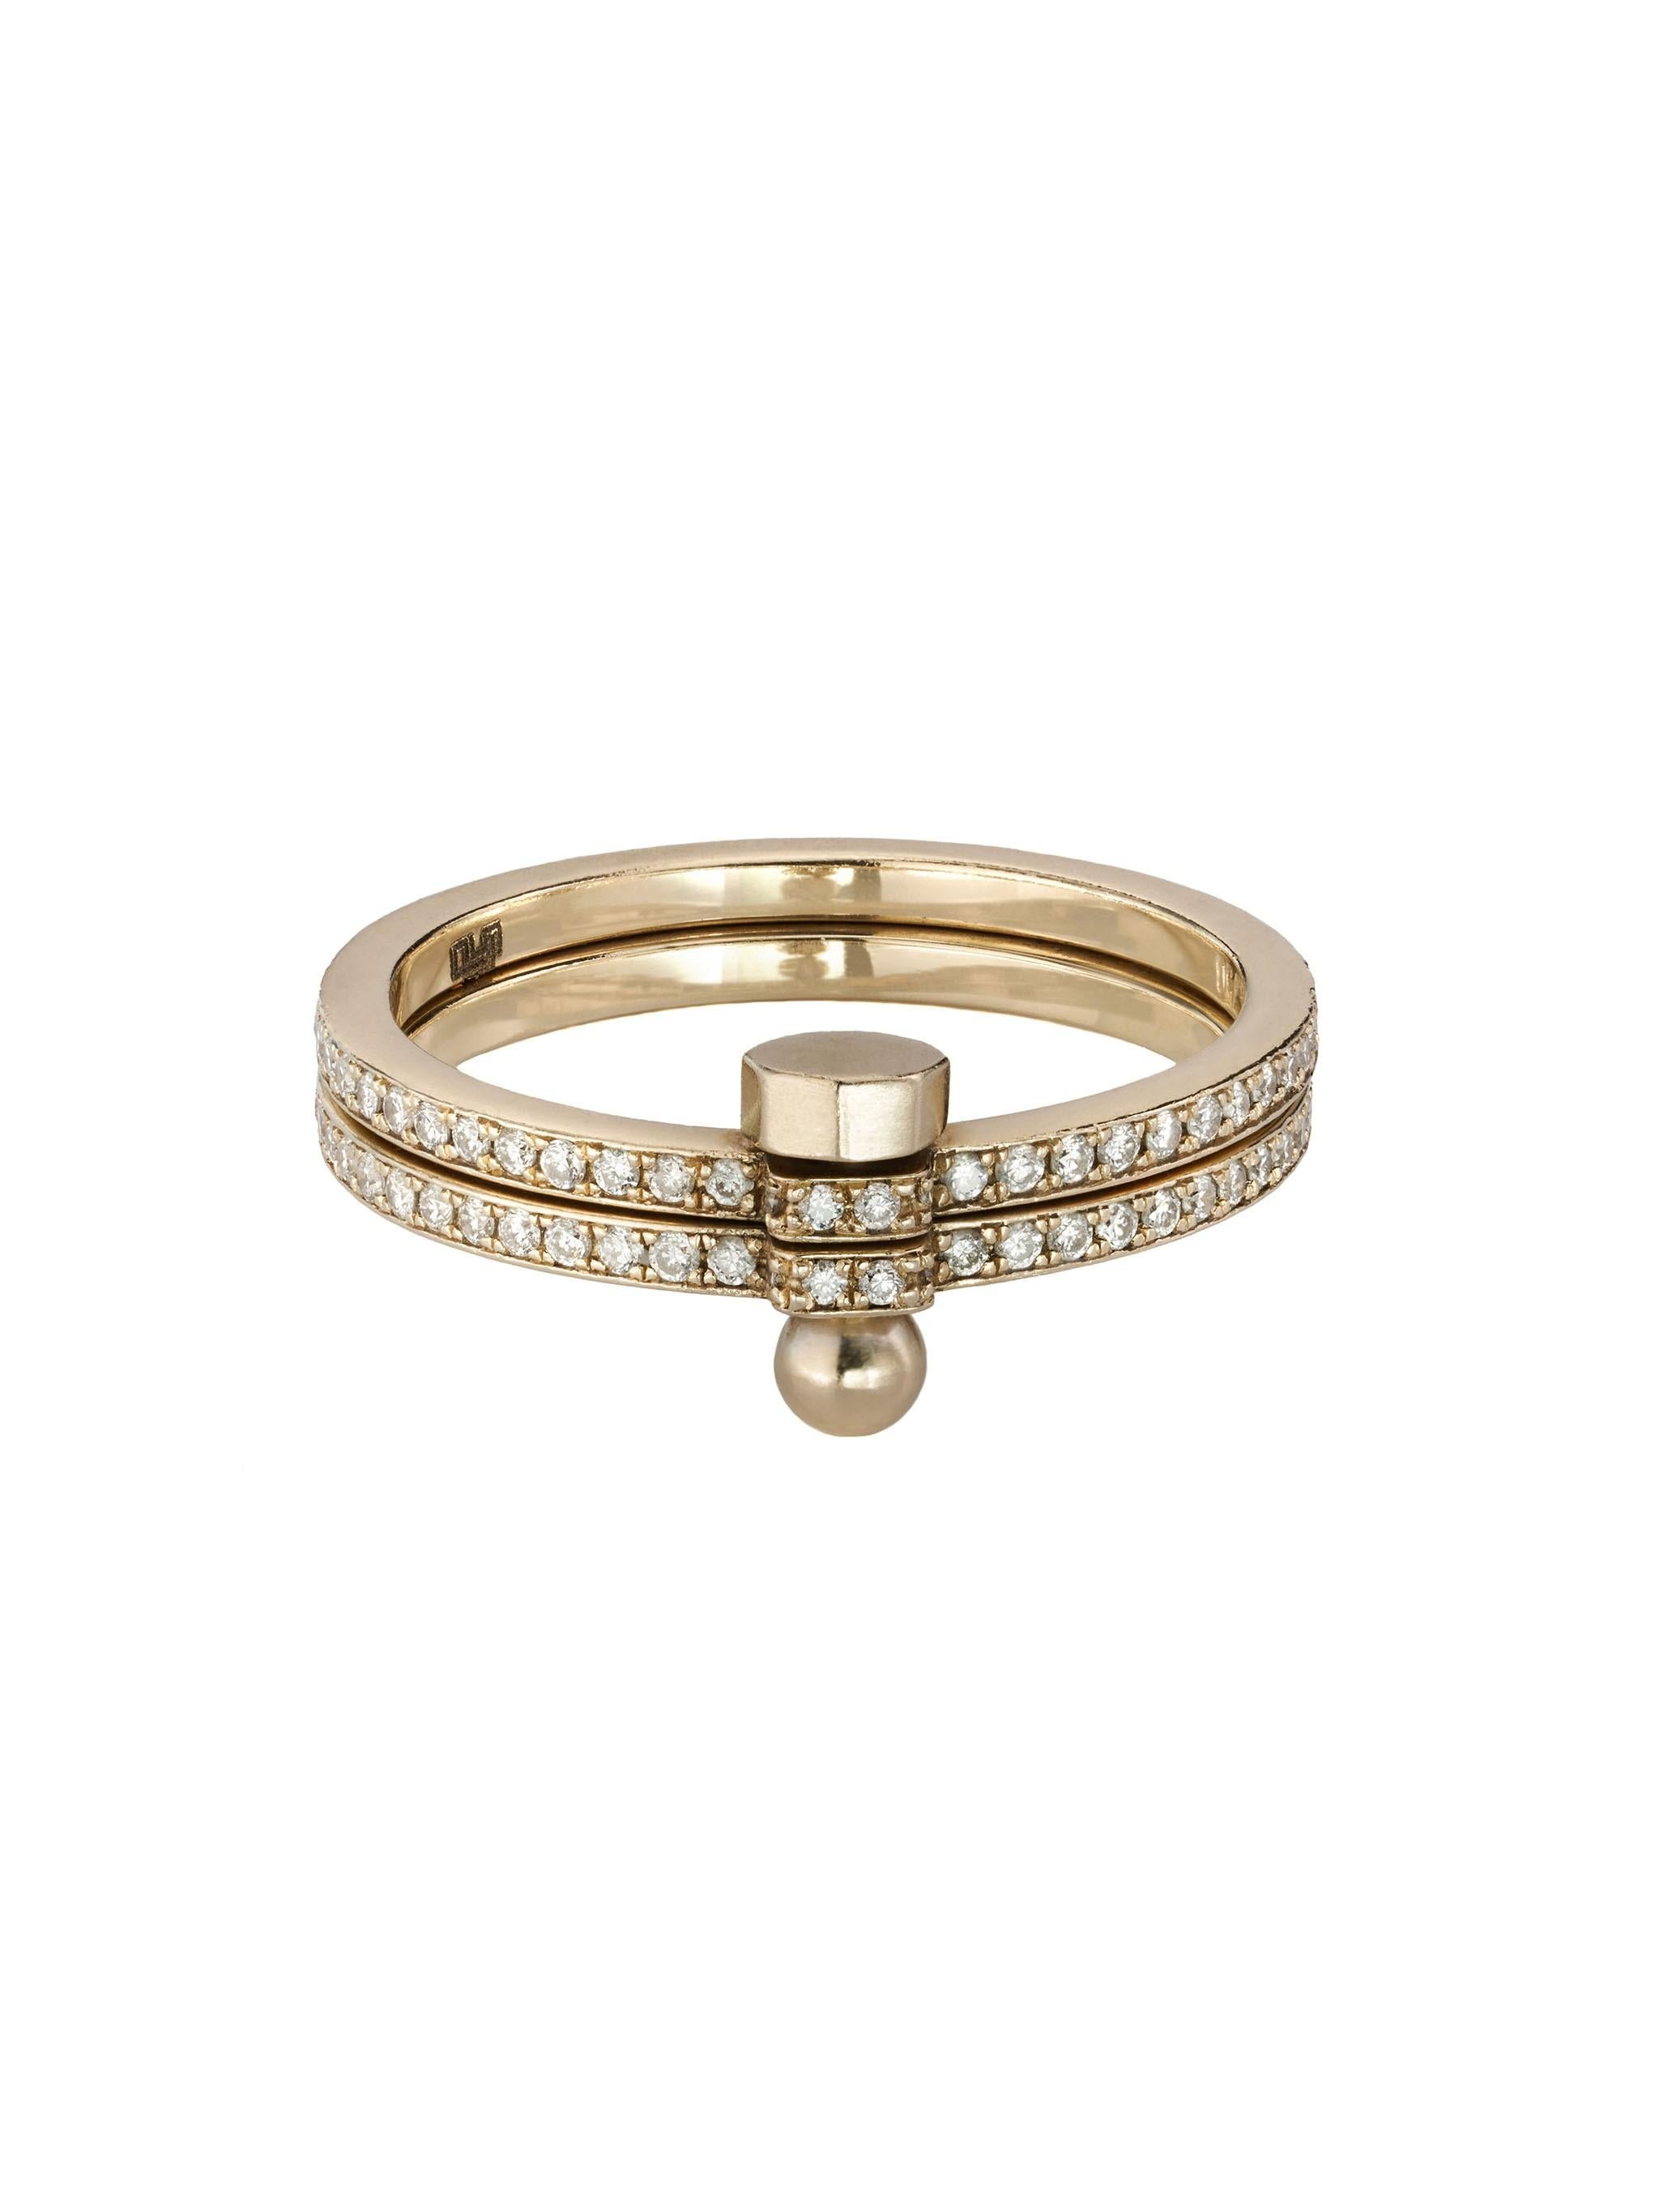 Dieser Ring aus der SYNDESIS-Kollektion von POLINA ELLIS besteht aus zwei durchgehenden, mit einer Schraube verbundenen Bändern. 
Handgefertigt aus 18 Karat rohem Weißgold mit 0,48 Karat weißen Diamanten im Brillantschliff. 
Der Innenumfang des